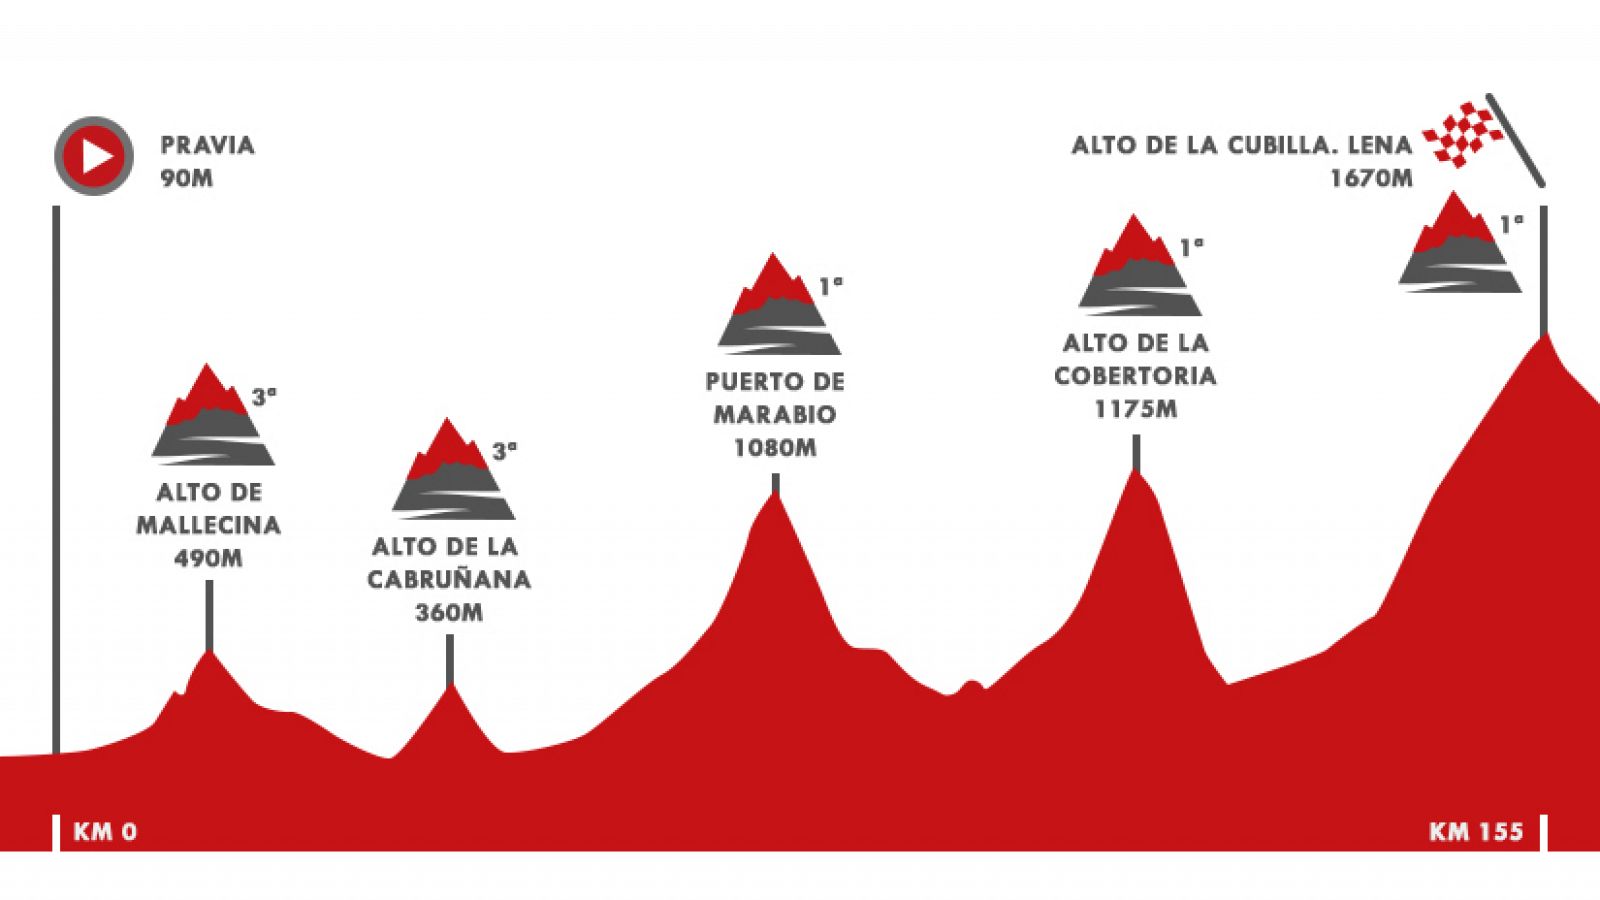 Vuelta 2019 | Etapa 16: Pravia - Alto de La Cubilla. Lena